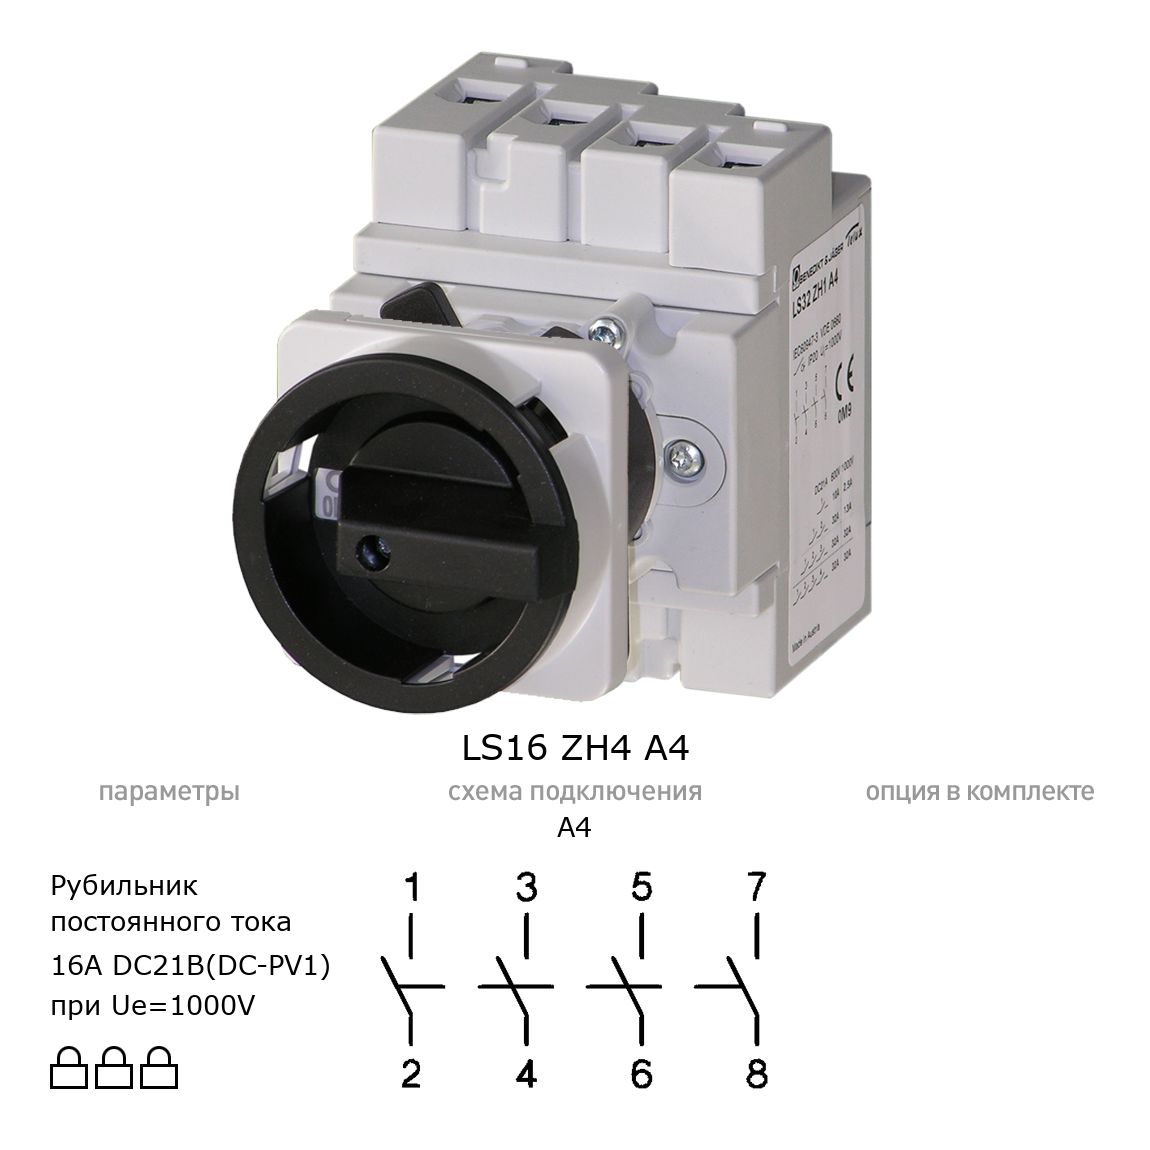 Выключатель нагрузки / рубильник для постоянного тока (DC) LS16 ZH4 A4 BENEDICT